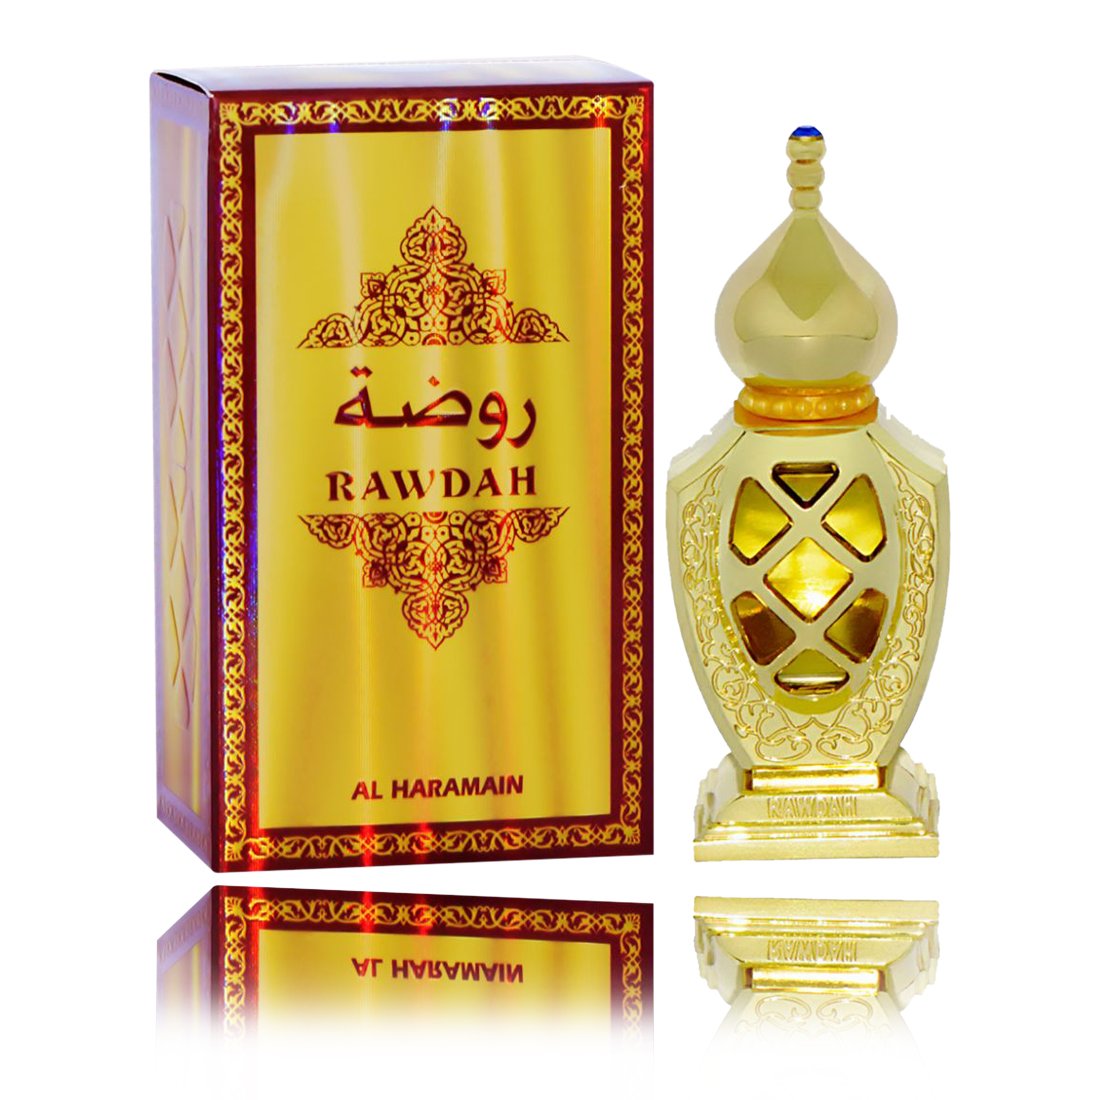 Al Haramain Rawdah Attar 15 ml